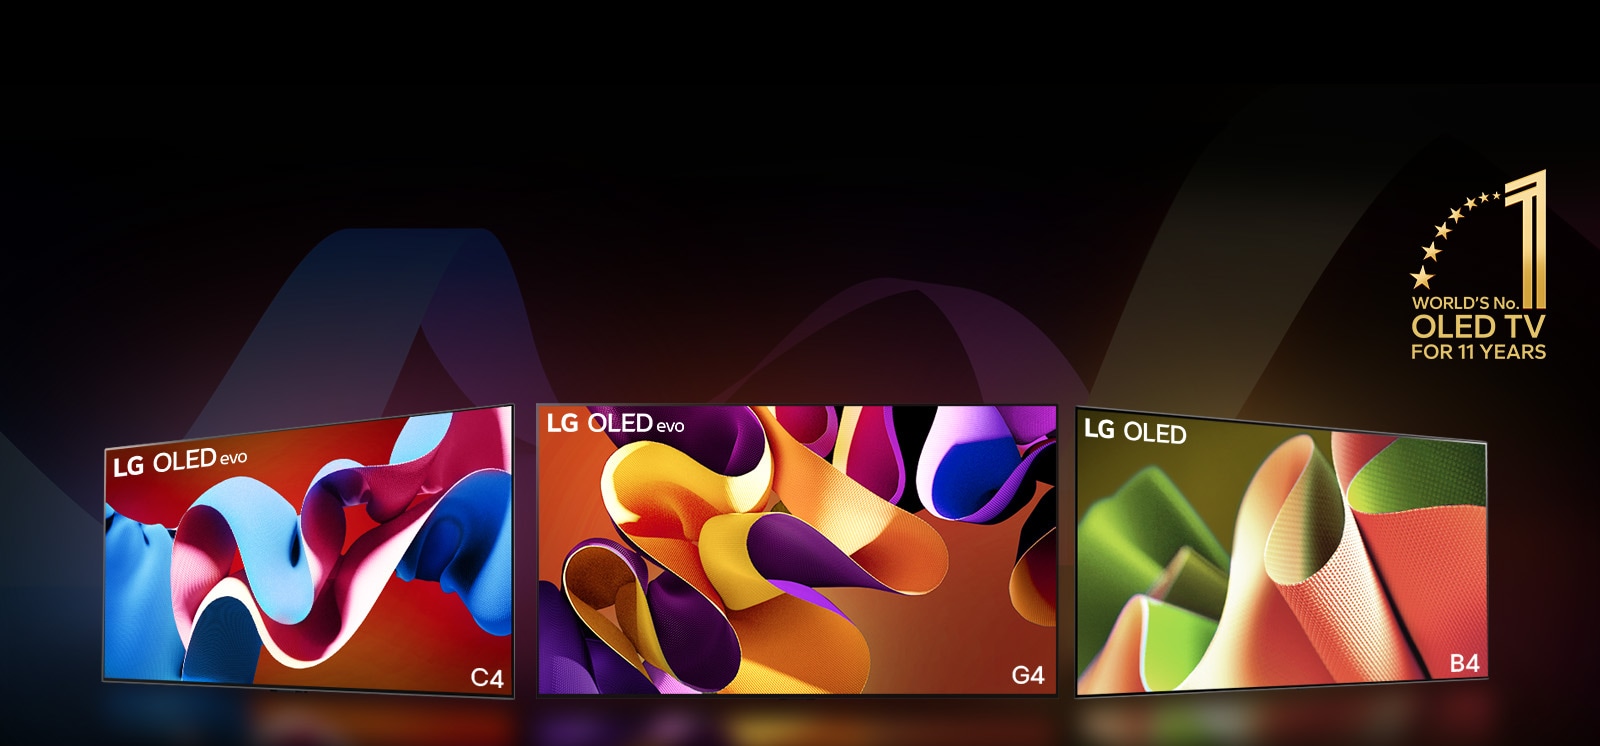 PC: LG OLED evo G4, LG OLED evo C4, și LG OLED B4 unul lângă altul, fiecare afișând o piesă de artă colorată diferit pe ecran. Luminile ies din fiecare televizor, pe podea. O emblemă aurie cu OLED TV numărul 1 în lume pentru 11 ani în colțul din dreapta sus.  MO: LG OLED evo G4, LG OLED evo C4, și LG OLED B4 la rândl, fiecare afișând o piesă de artă colorată diferit pe ecran. Luminile ies din fiecare televizor, pe podea. O emblemă aurie cu OLED TV numărul 1 în lume pentru 11 ani în colțul din dreapta sus.